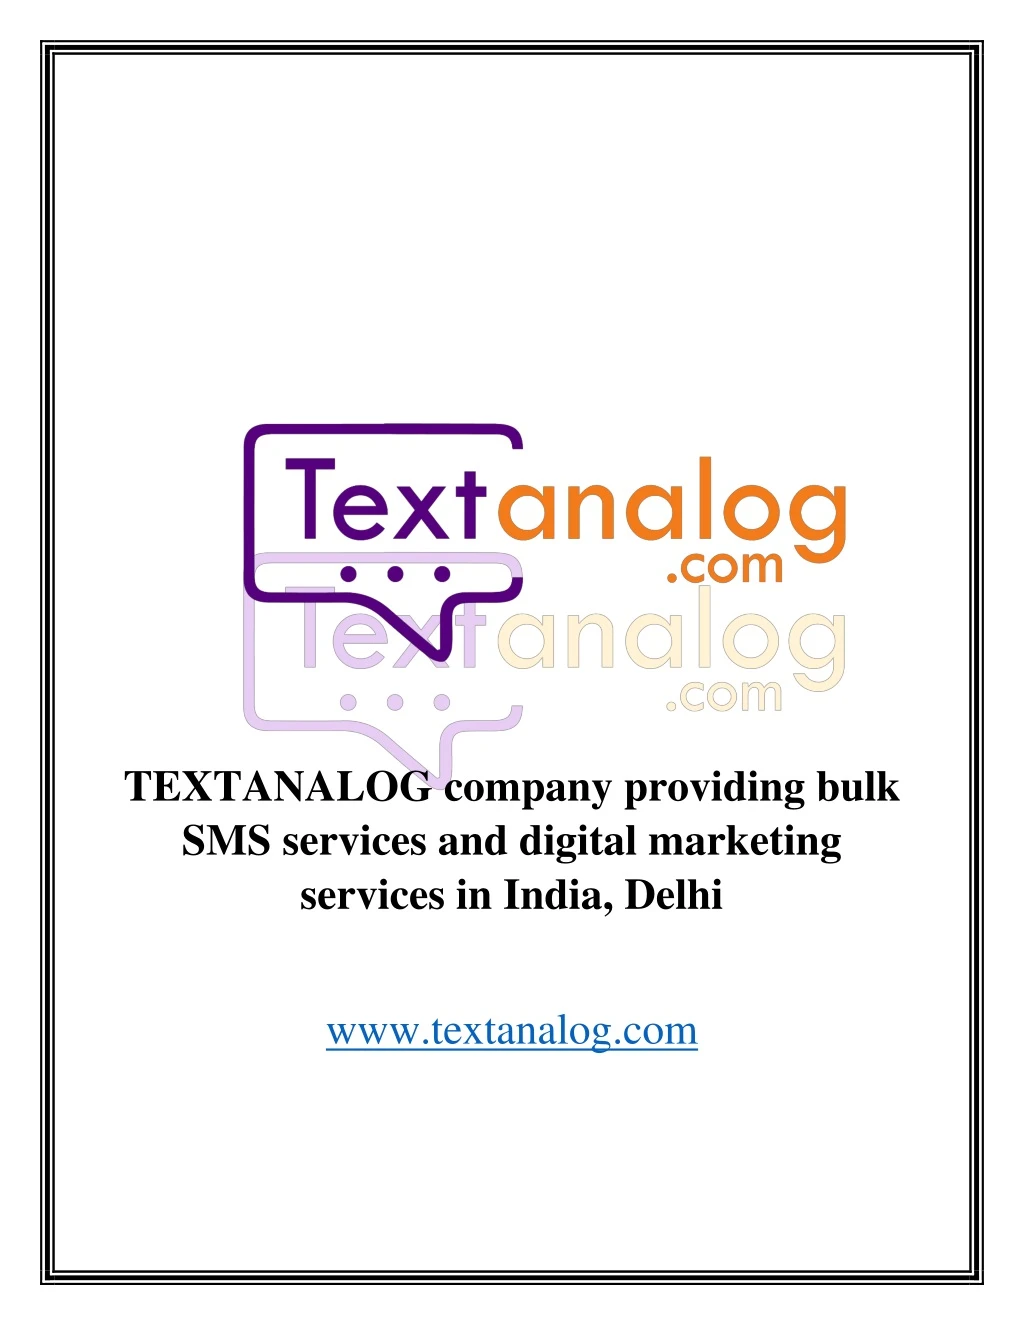 textanalog company providing bulk sms services